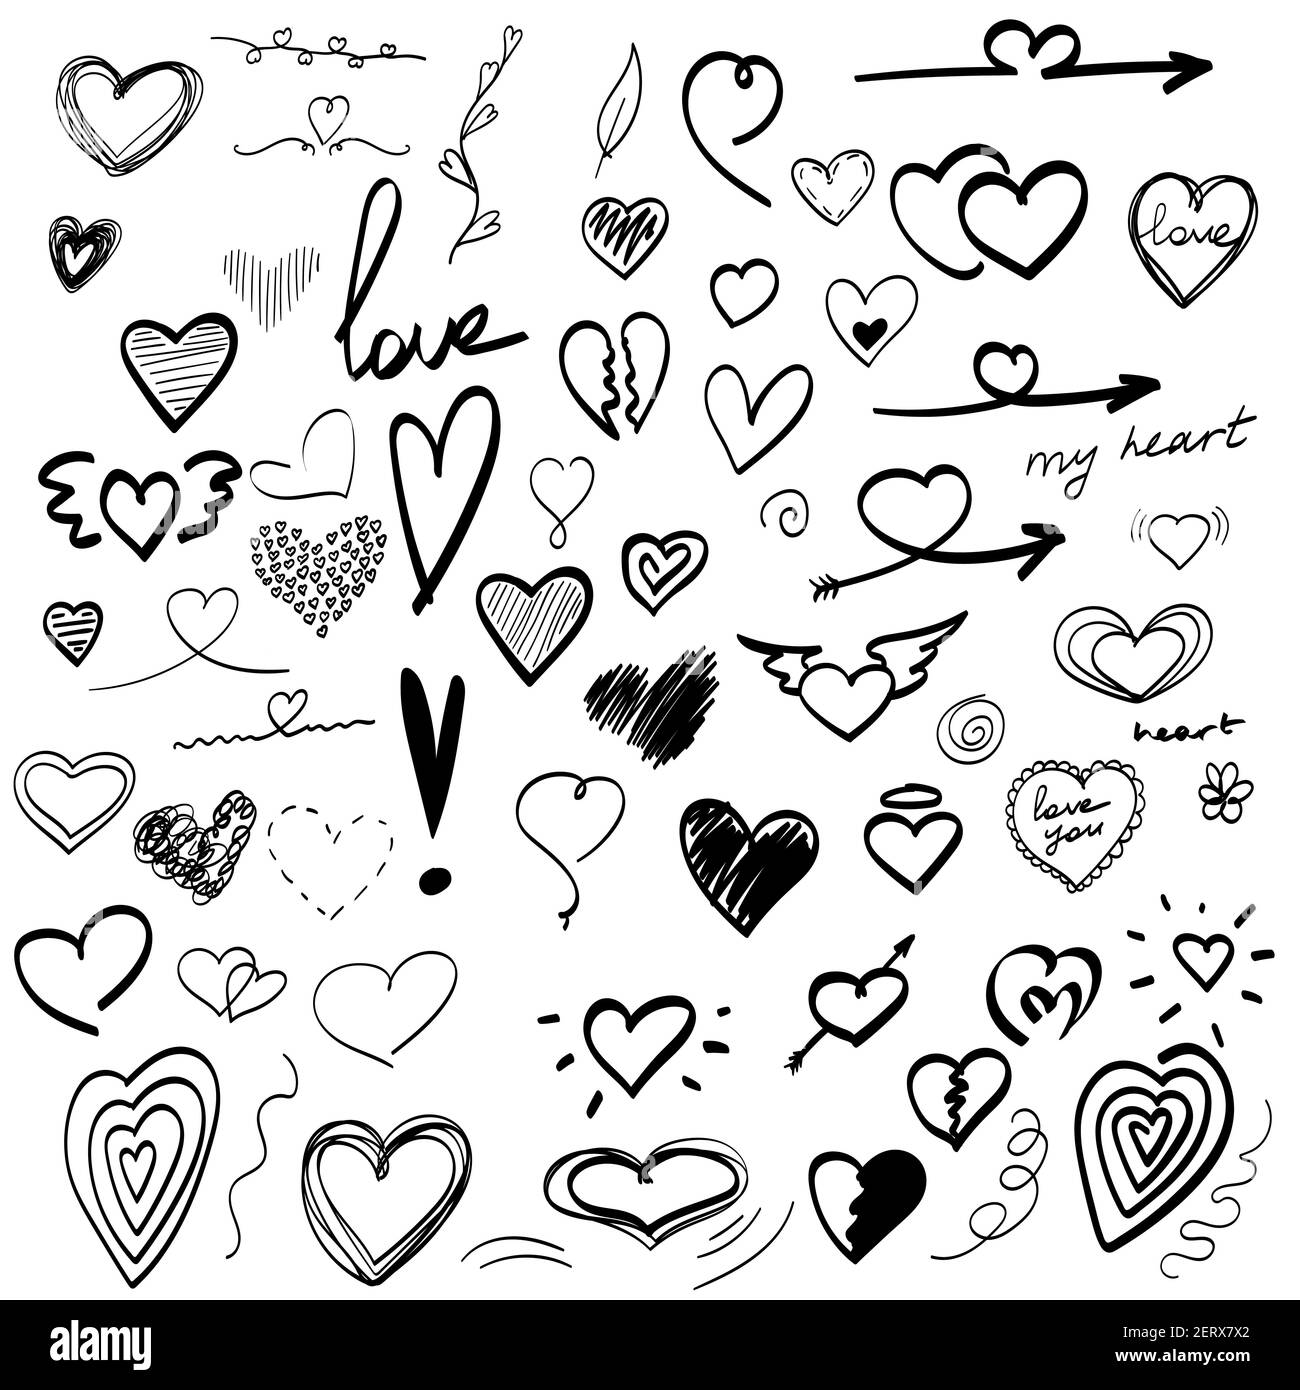 Cute Heart Drawings With Wings - Jacks Boy Blog